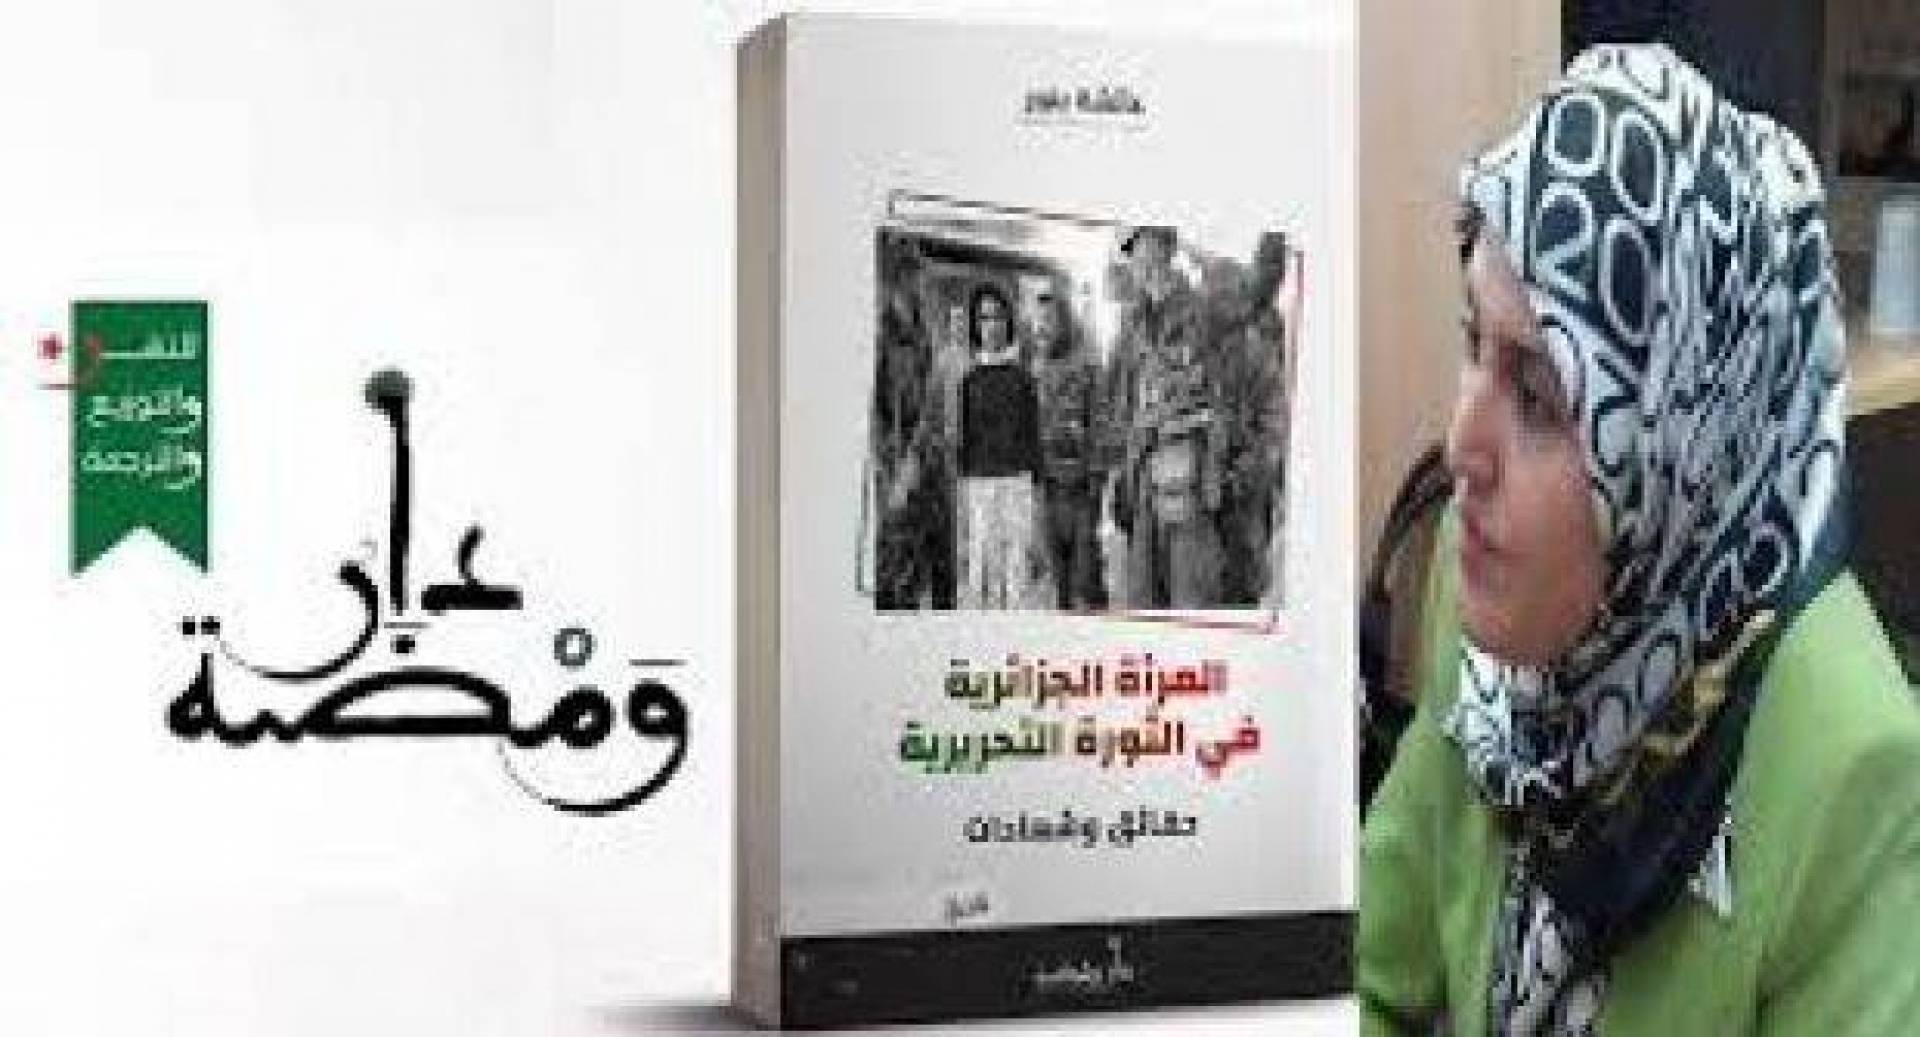 قراءة في كتاب.. كتاب المرأة الجزائرية في الثورة التحريرية (حقائق وشهادات) للأديبة عائشة بنور